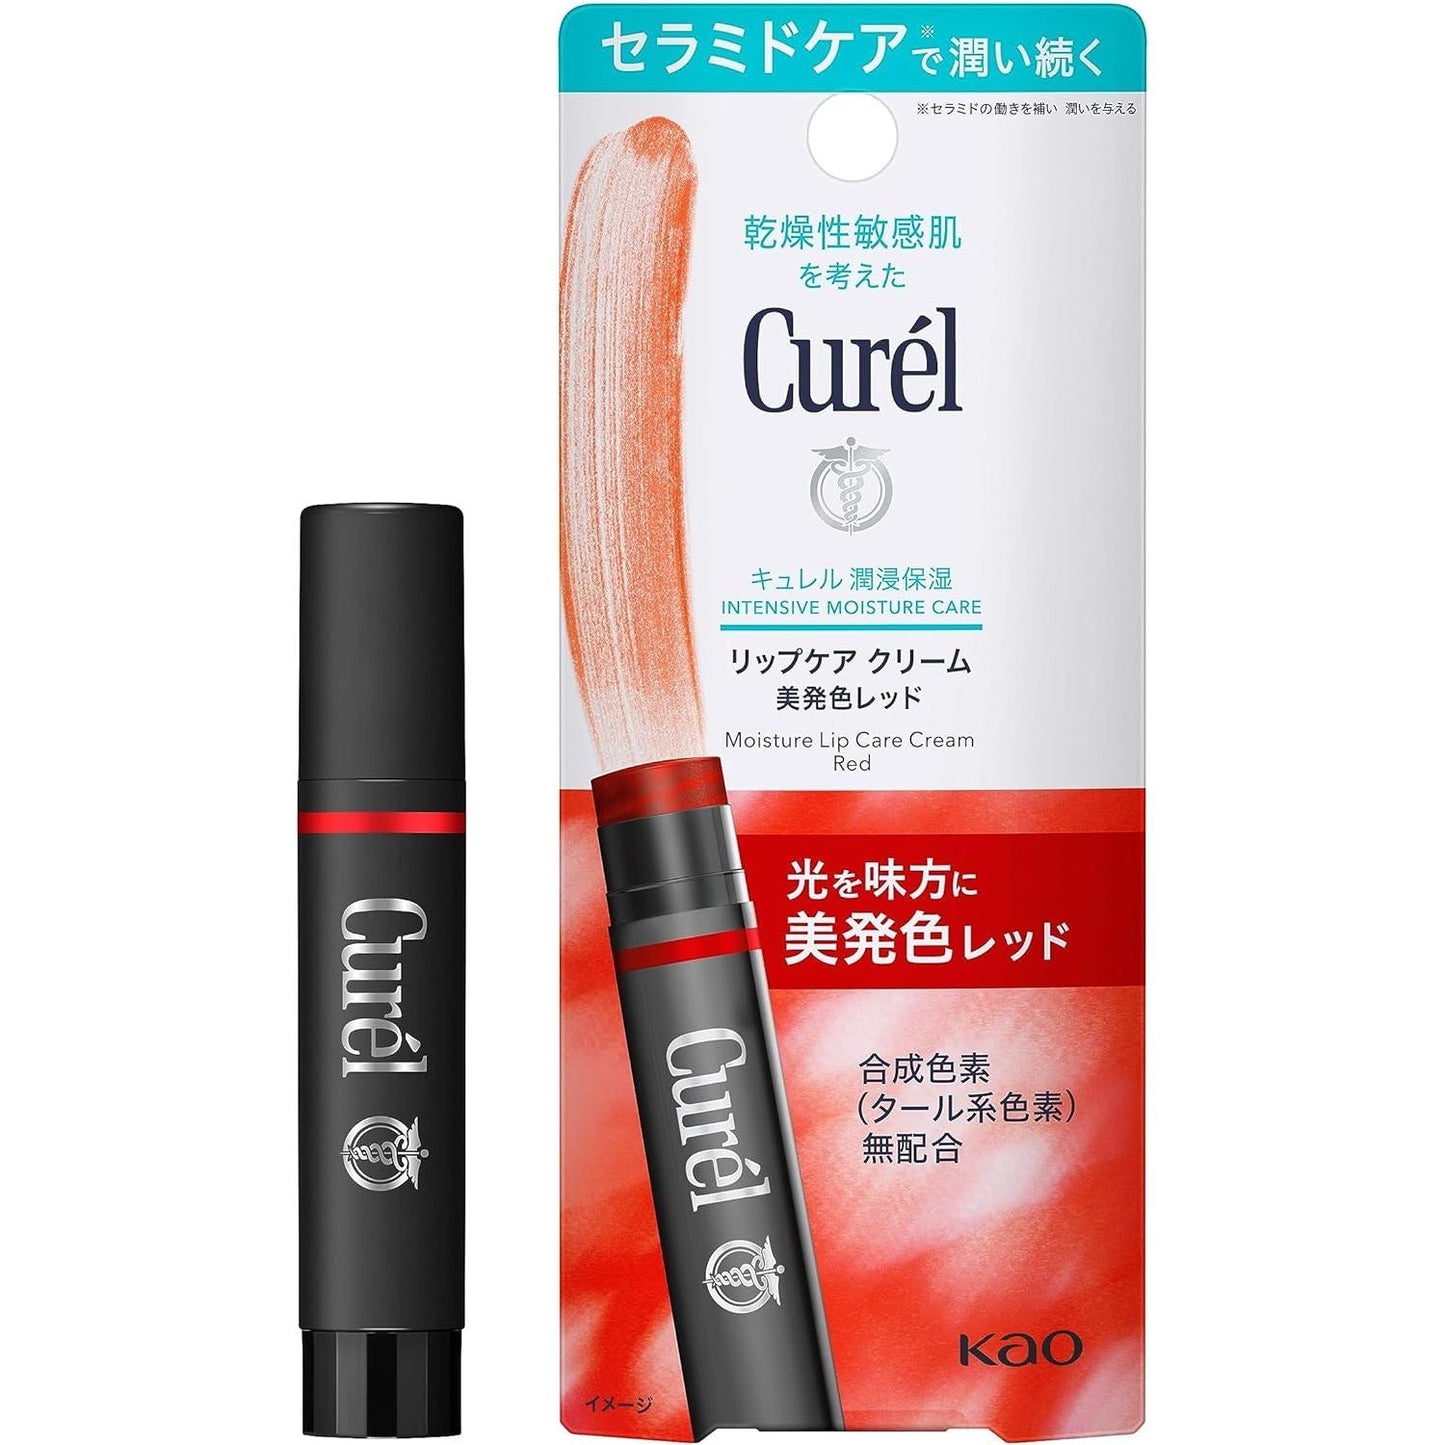 Curel珂潤 潤唇膏4.2g - 小熊藥妝 - 日本藥妝直送台灣